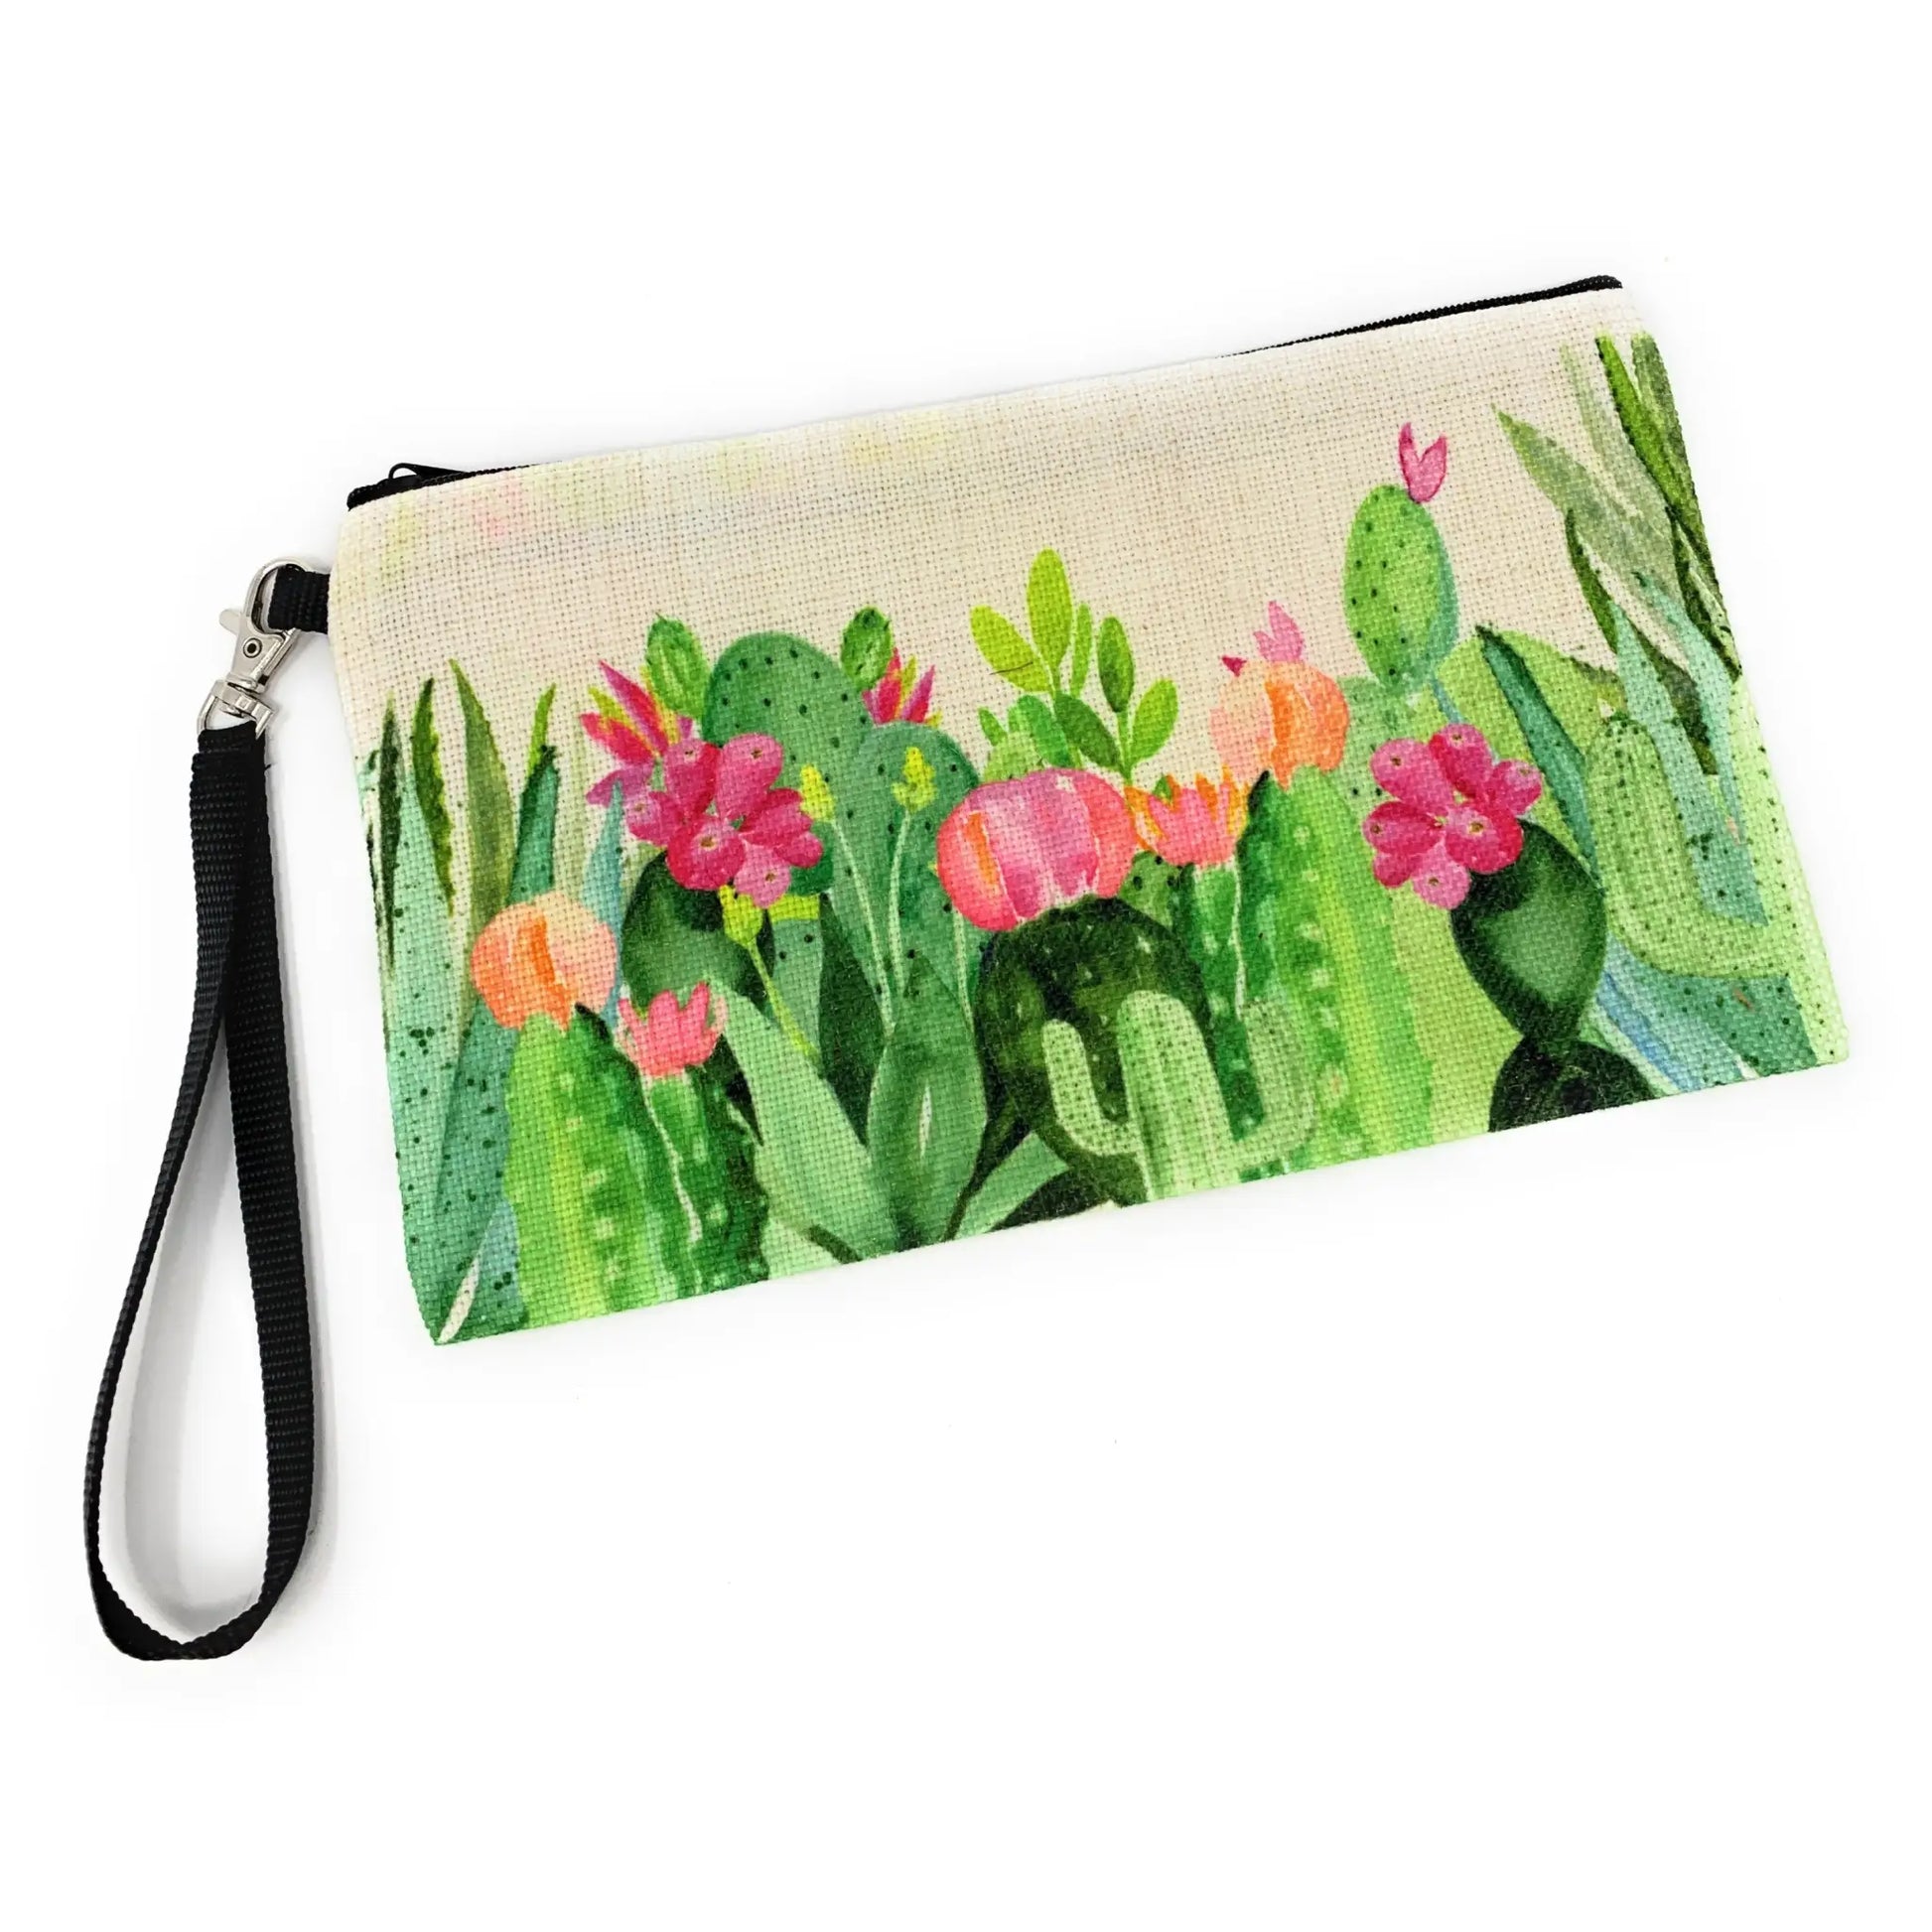 Cactus Garden linen bag with wrist strap - Bag